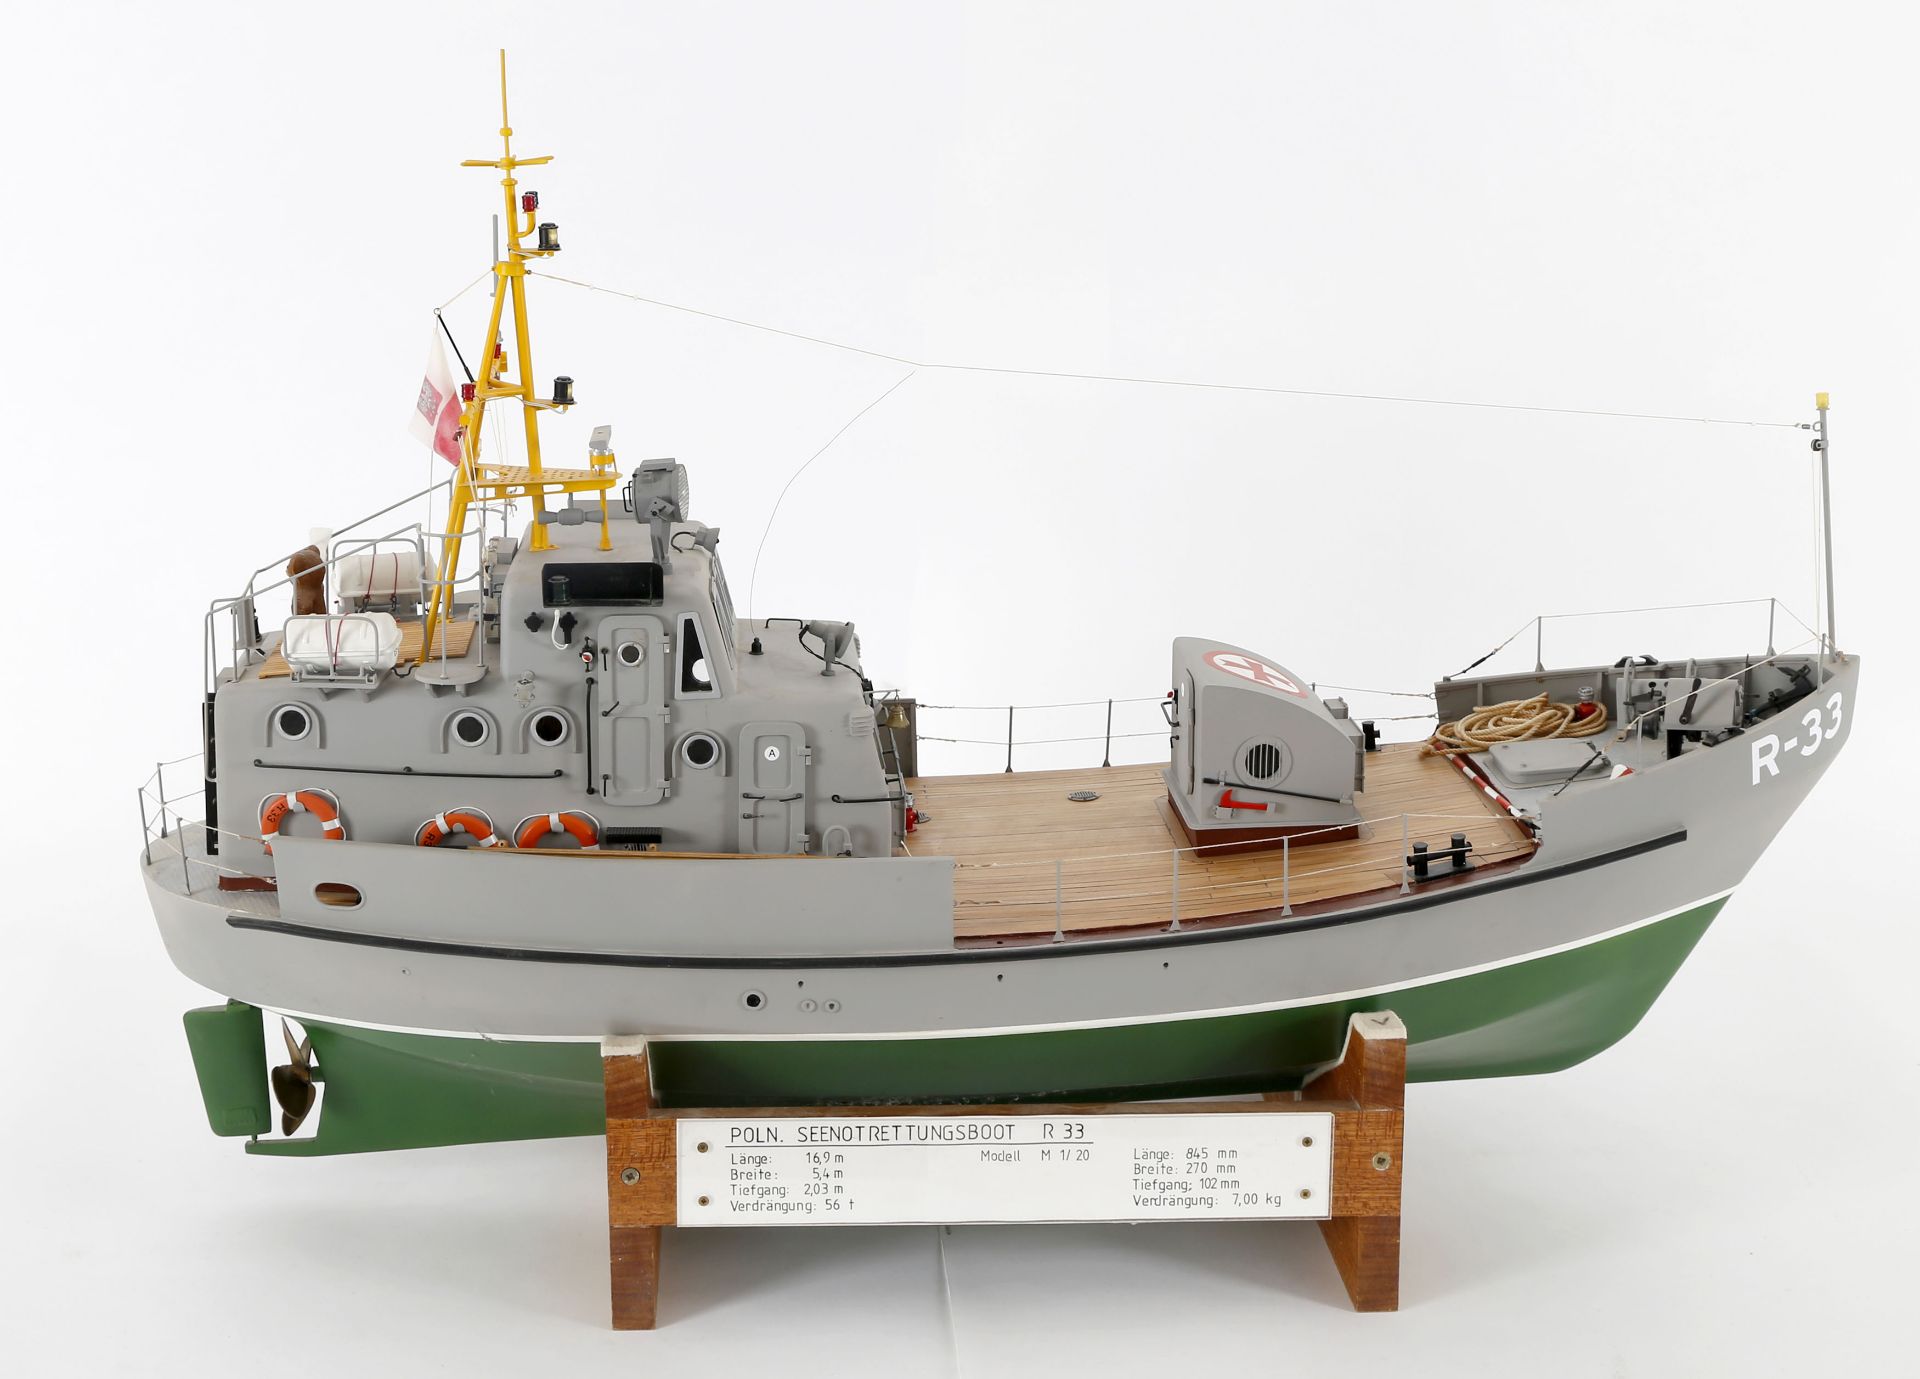 Modell des polnischen Rettungsbootes 'R 33' - Image 7 of 7